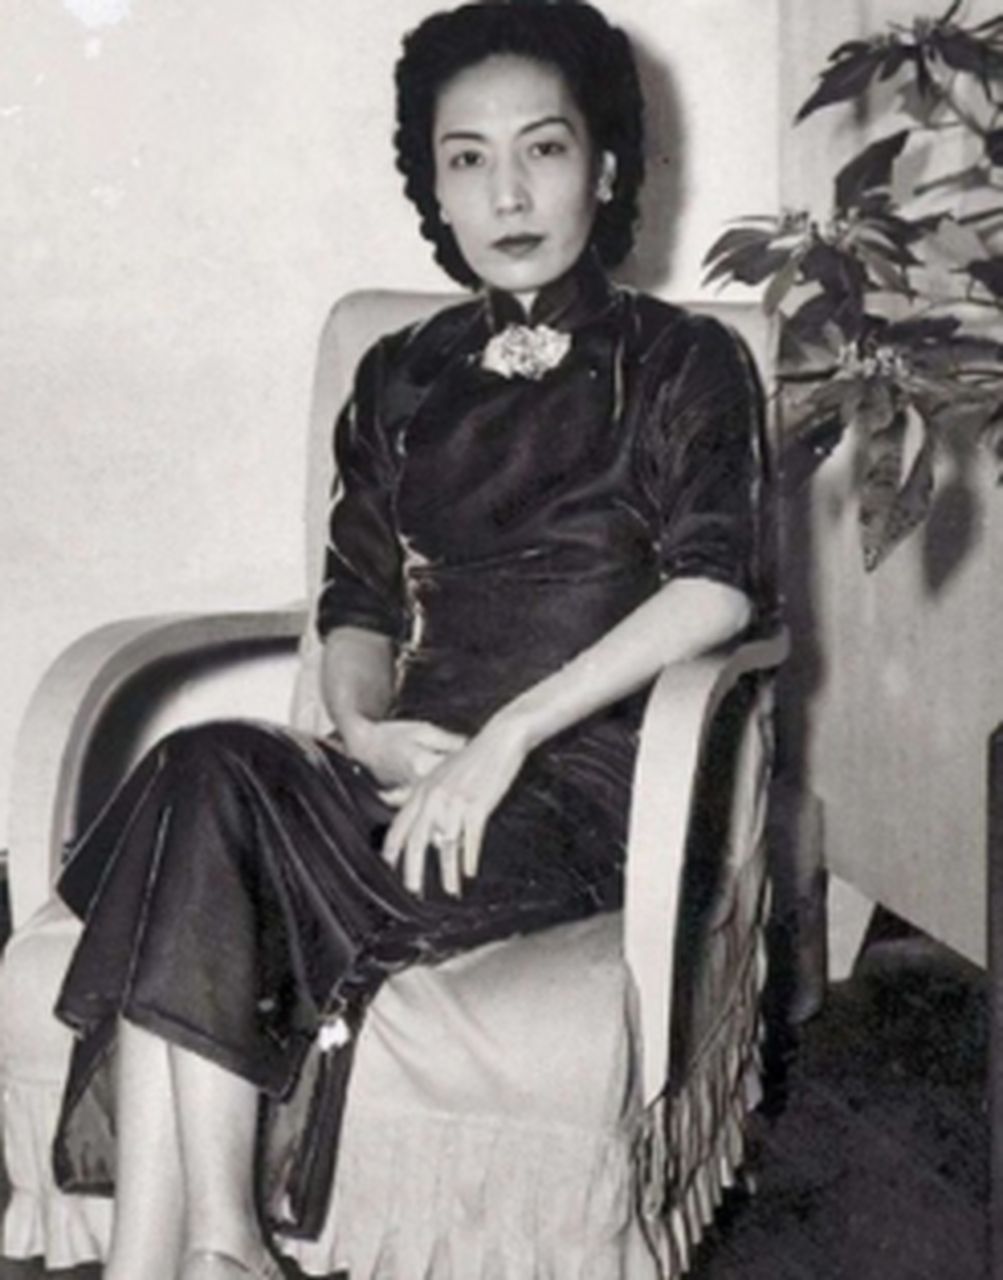 1965年,杜月笙的四姨太姚玉兰外出和朋友打桥牌时,突然感觉浑身燥热